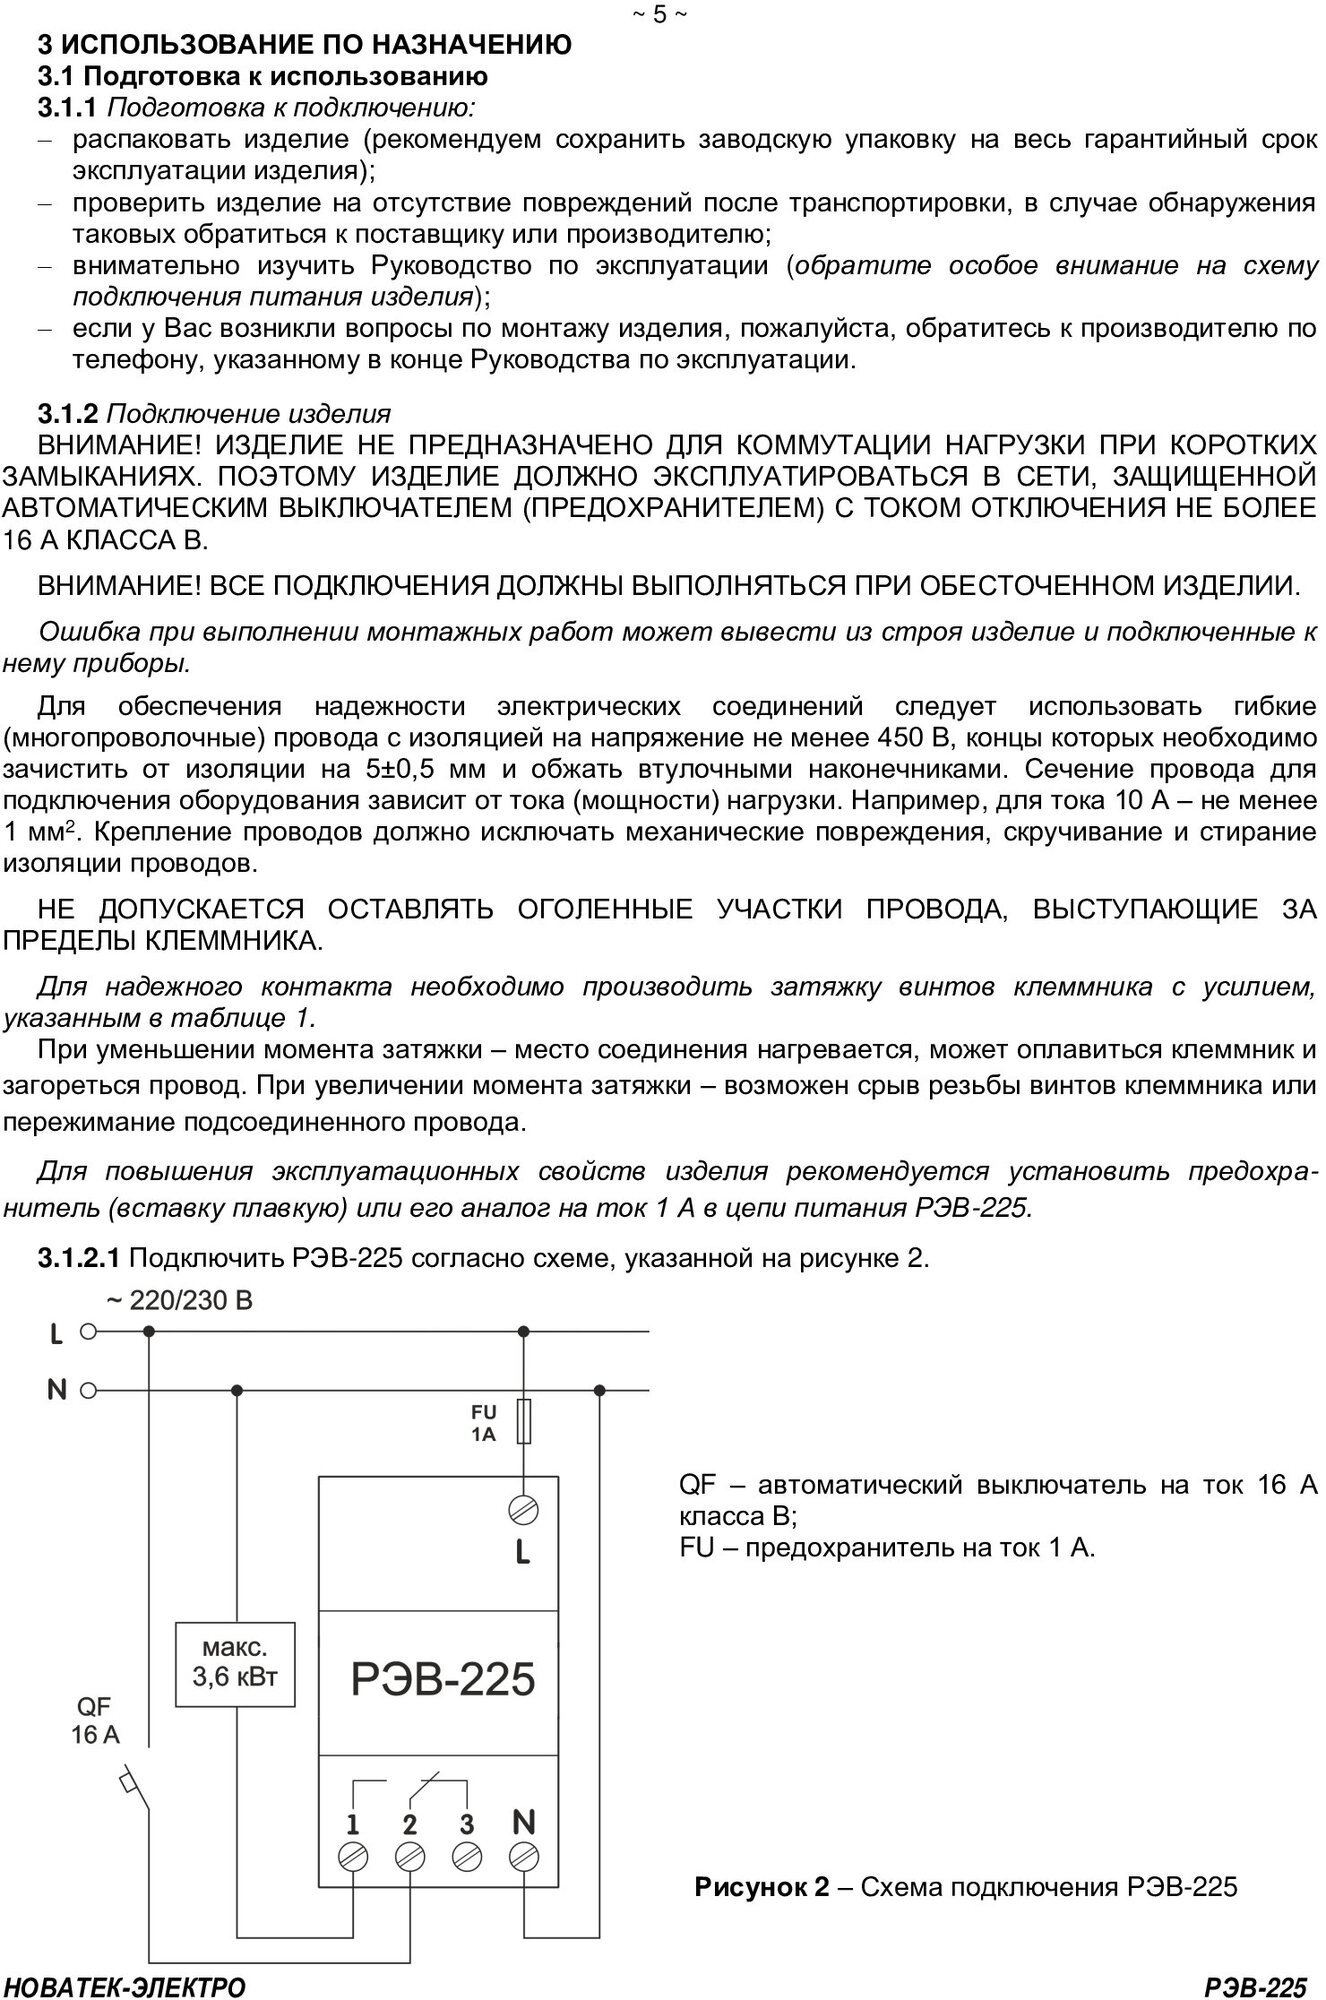 Реле времени РЭВ-225 НовАтек-Электро 3425604225 - фотография № 8